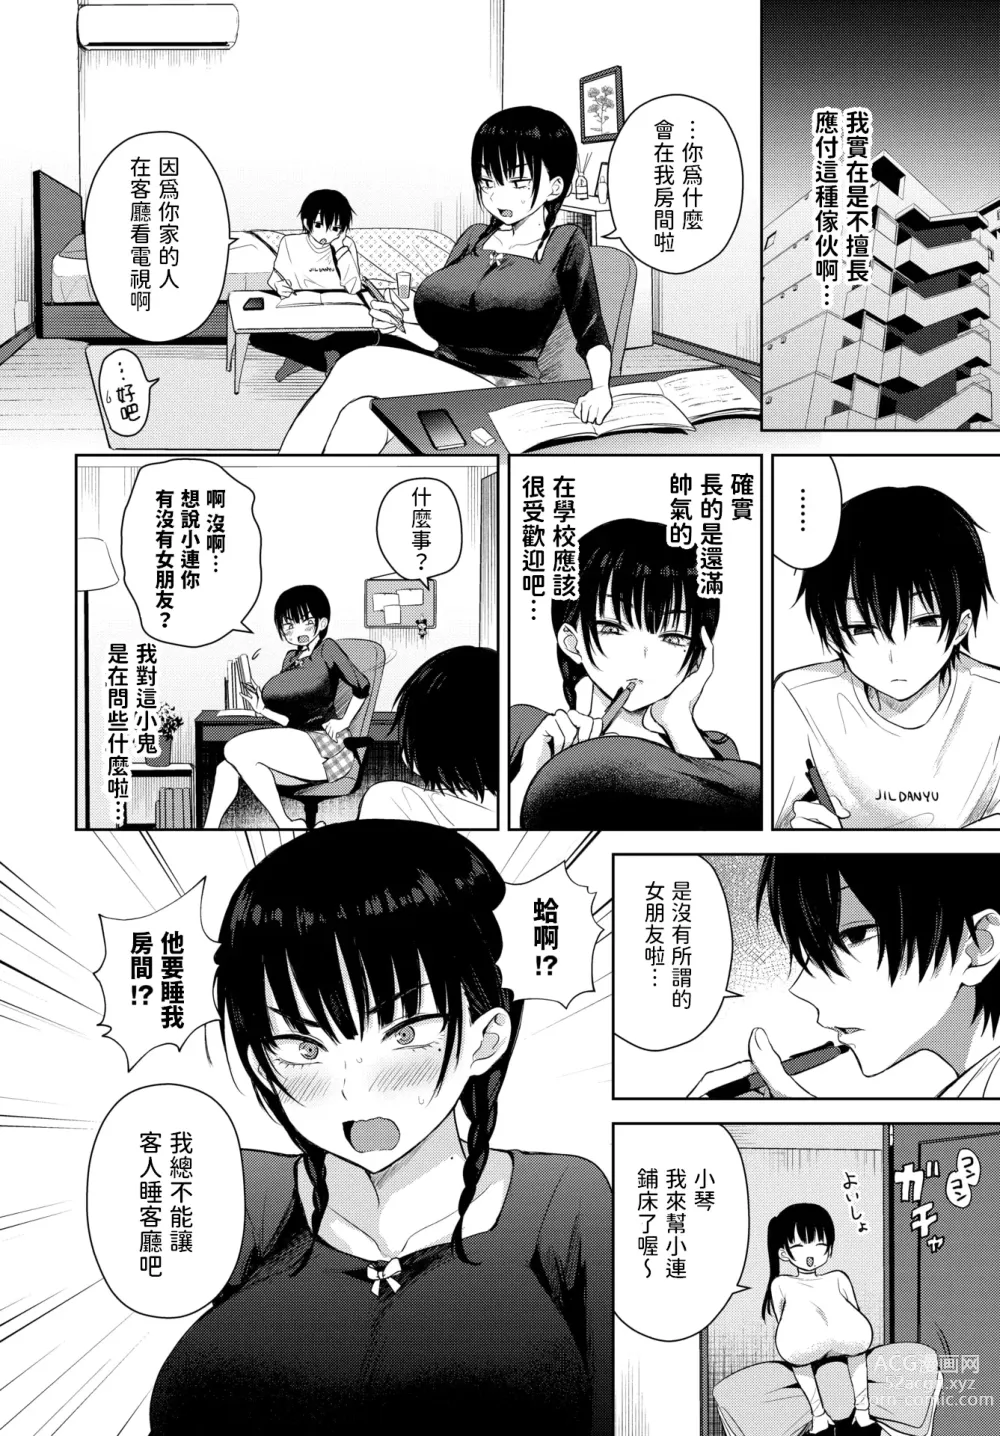 Page 2 of manga 7days